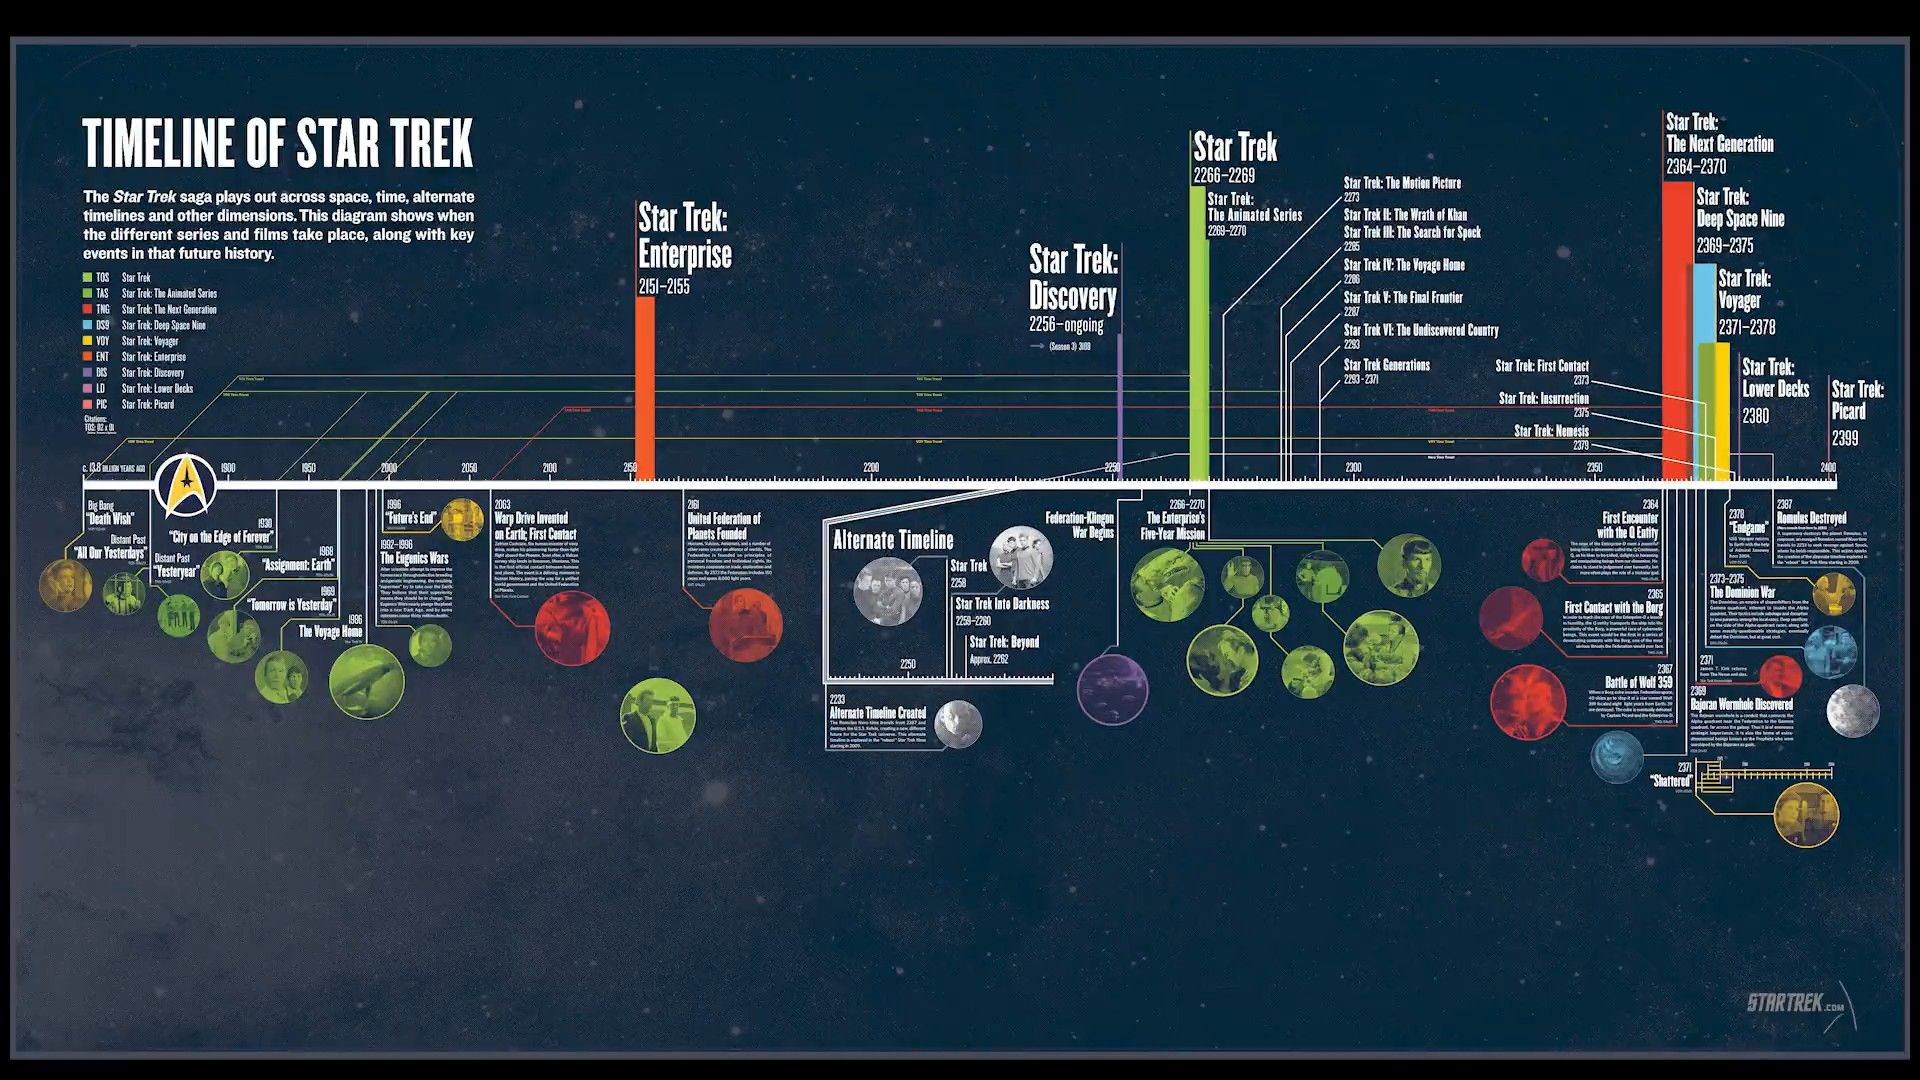 Star Trek franchise timeline